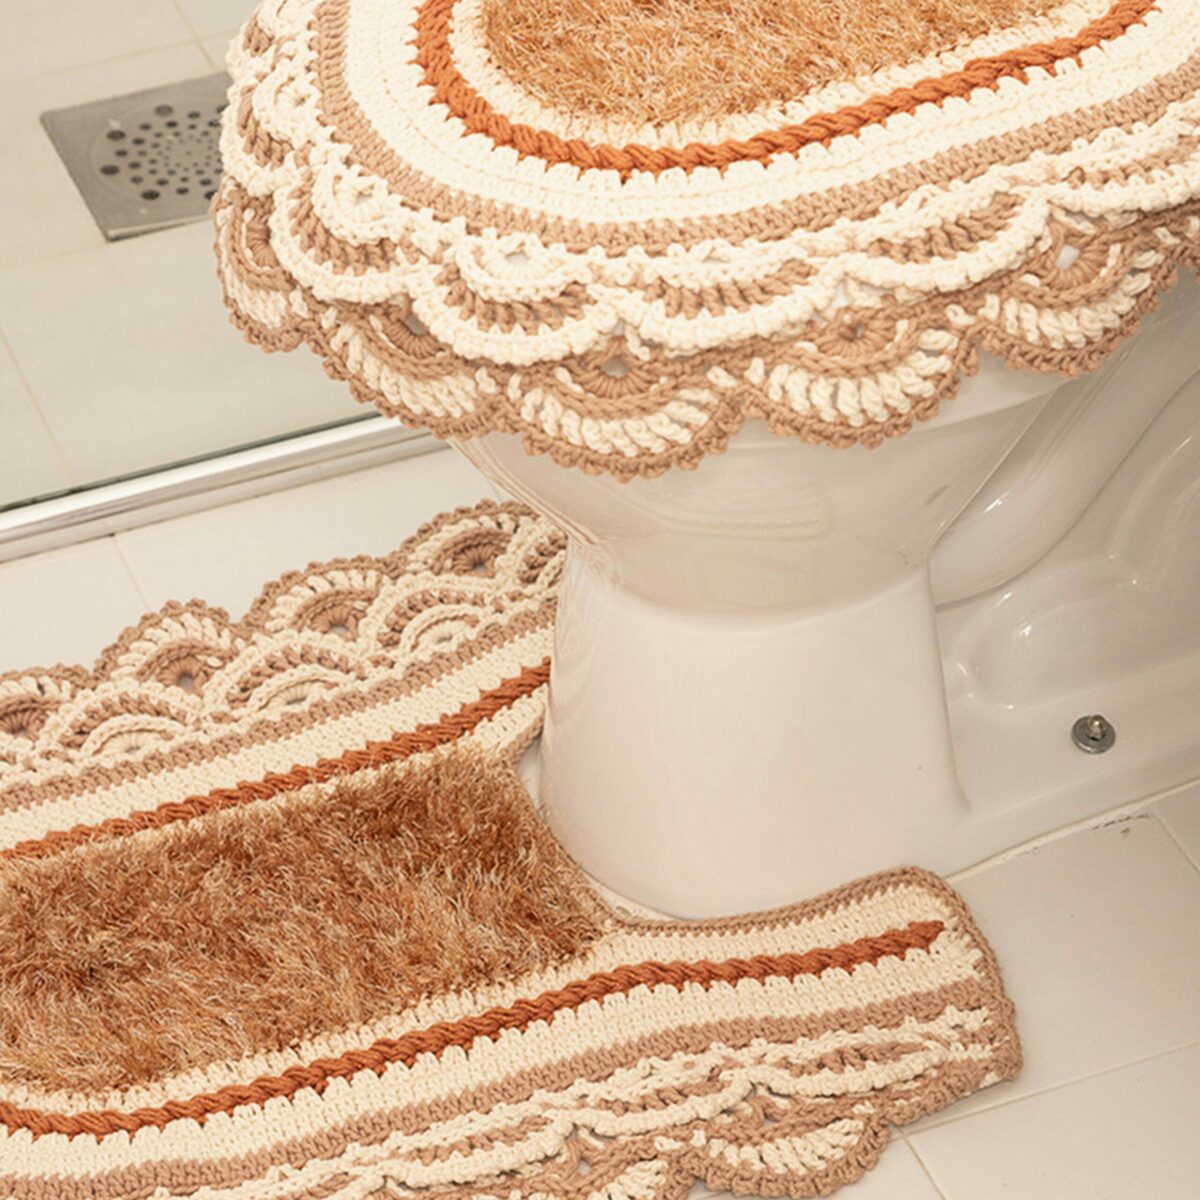 Подробно: вязанные коврики в ванную комнату крючком (фото примеров)